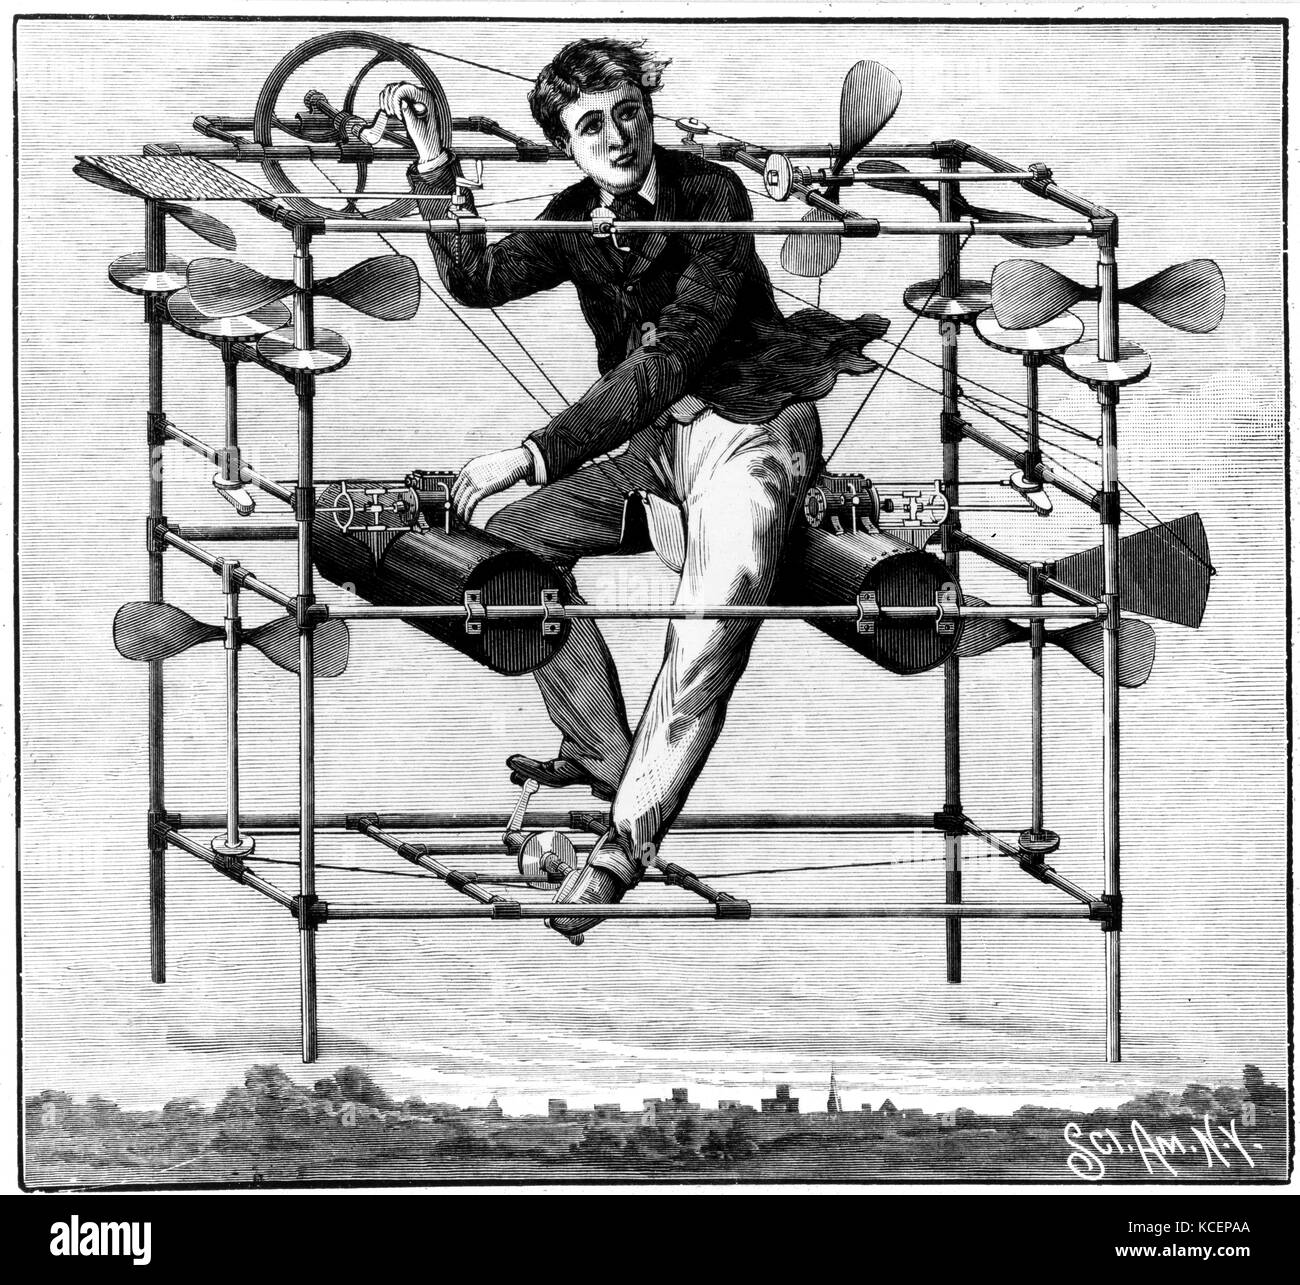 Scientific American Illustration des Fliegenden Bettgestell (W Ayers fliegenden Maschine), welches Pedal unterstützt wurde. 1885 Stockfoto